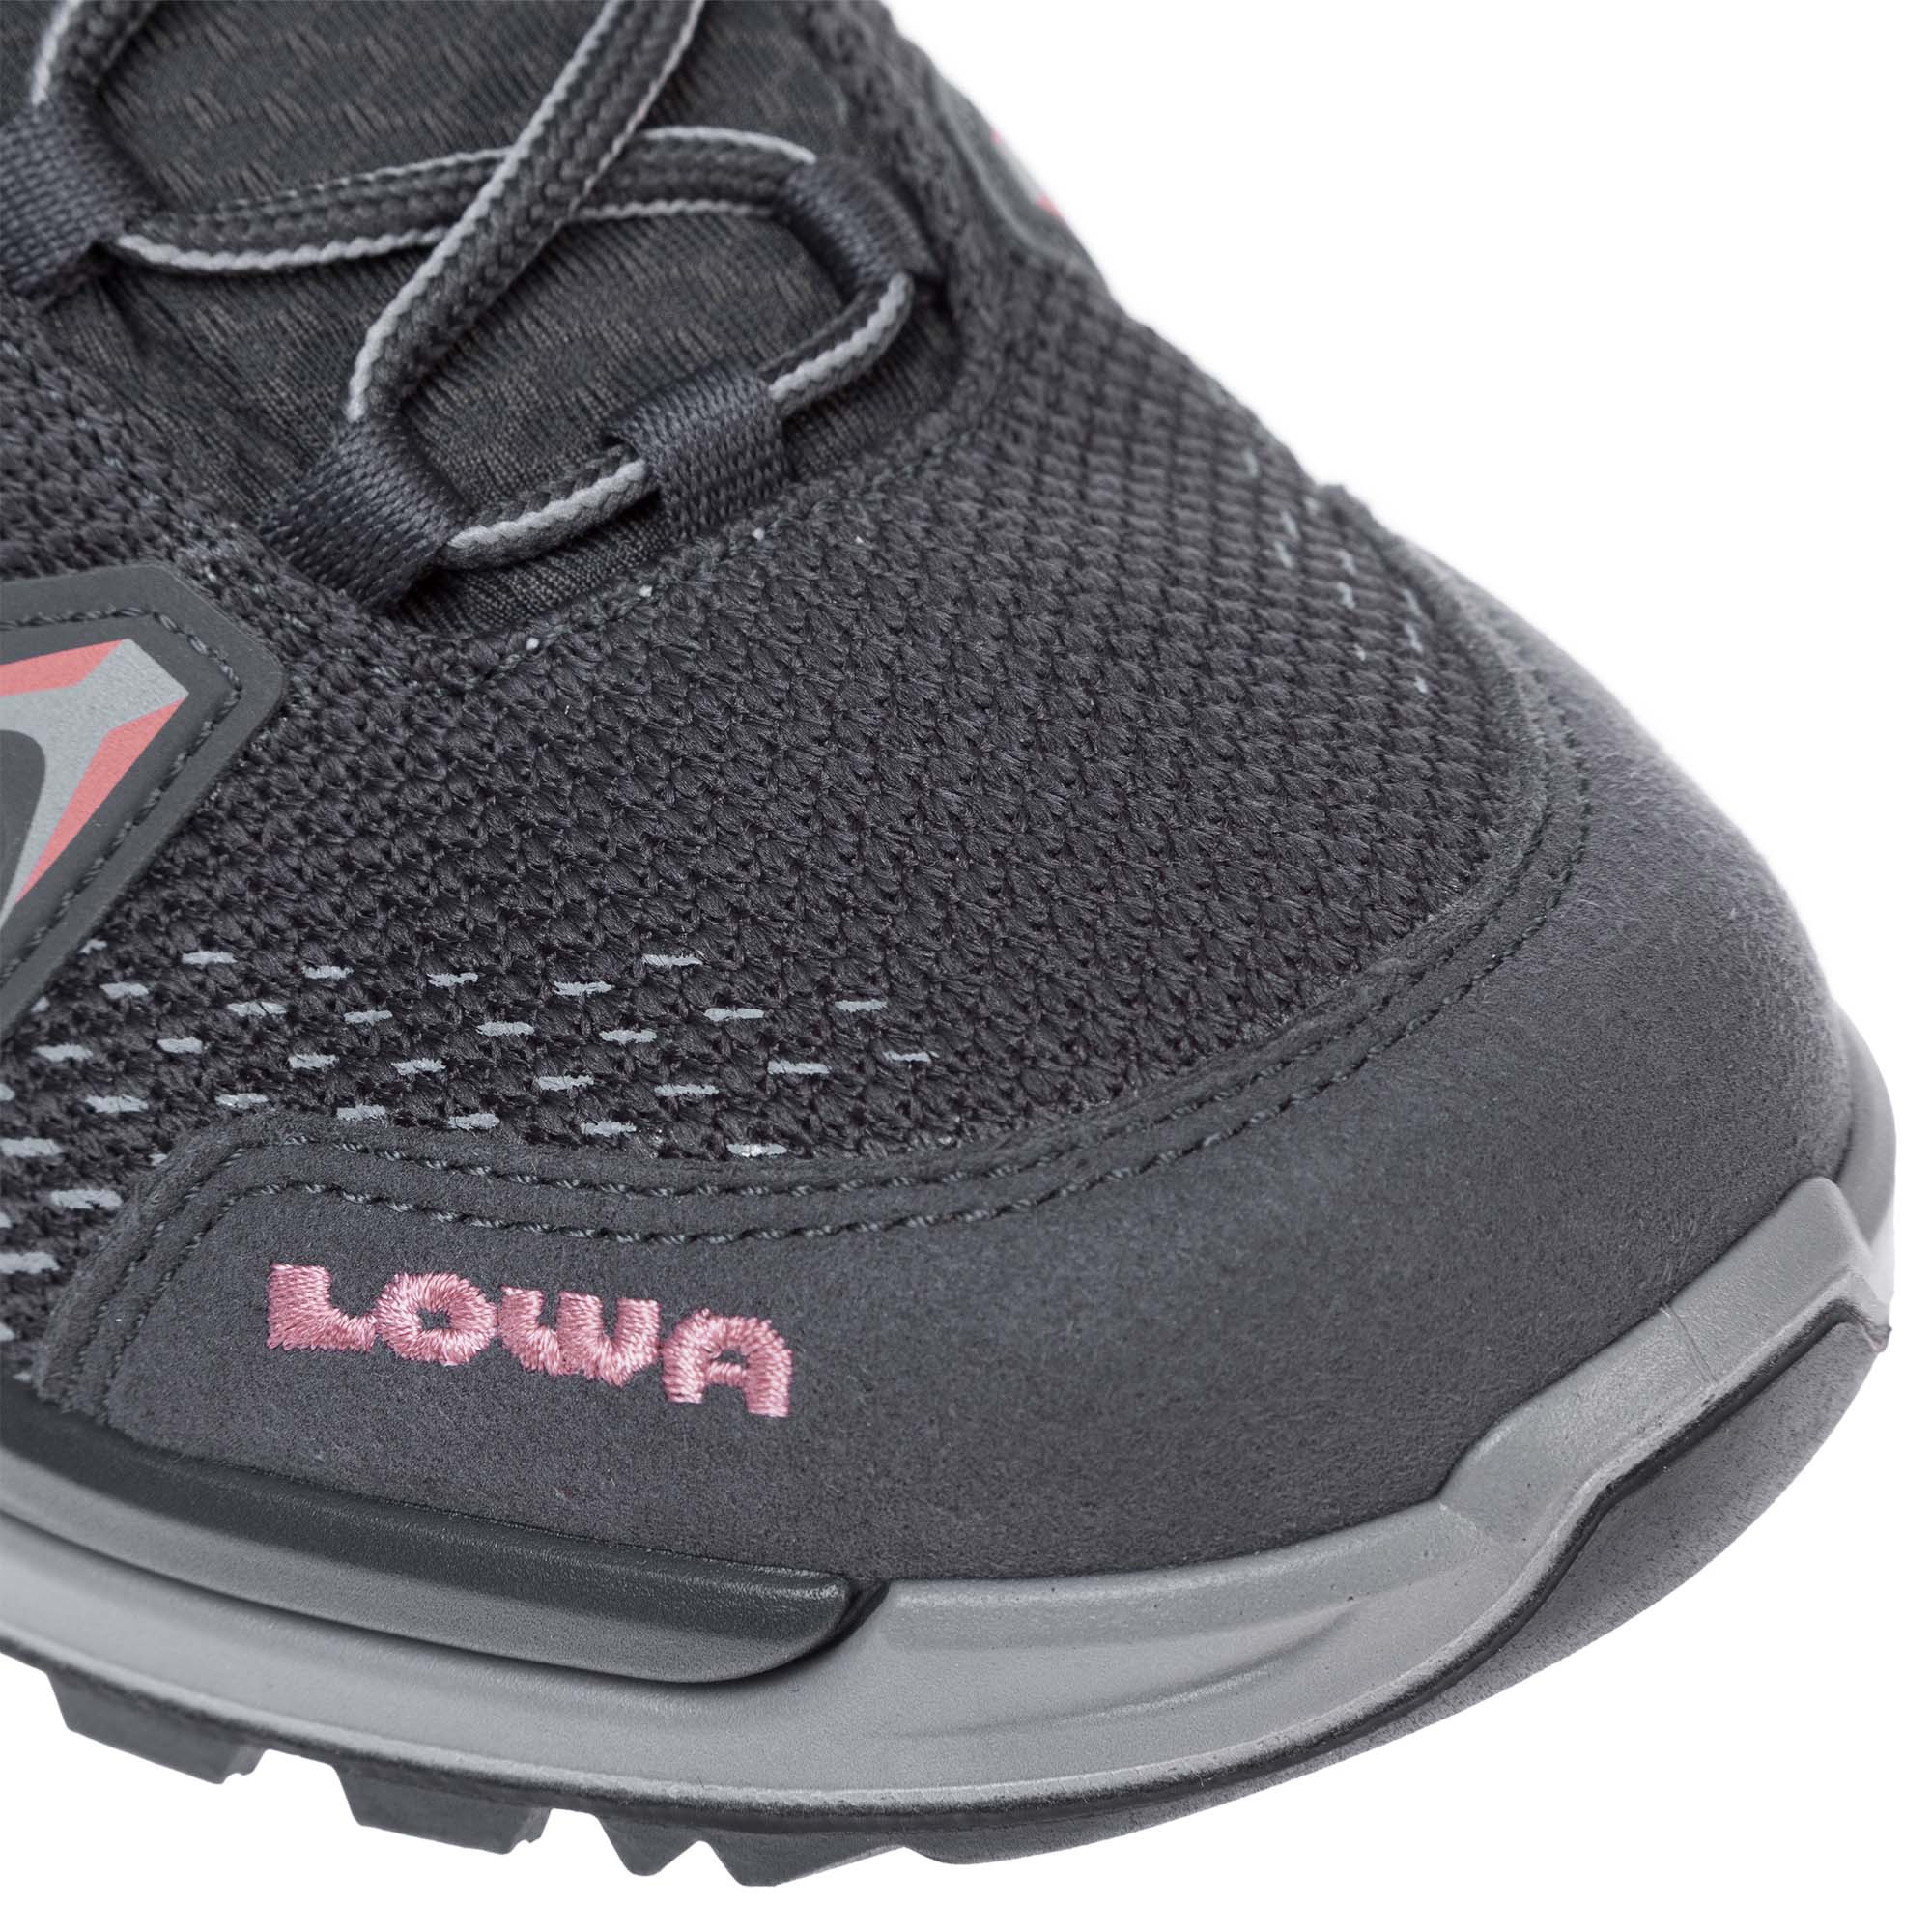 Lowa Innox Pro GTX Mid Women's Hiking Boots